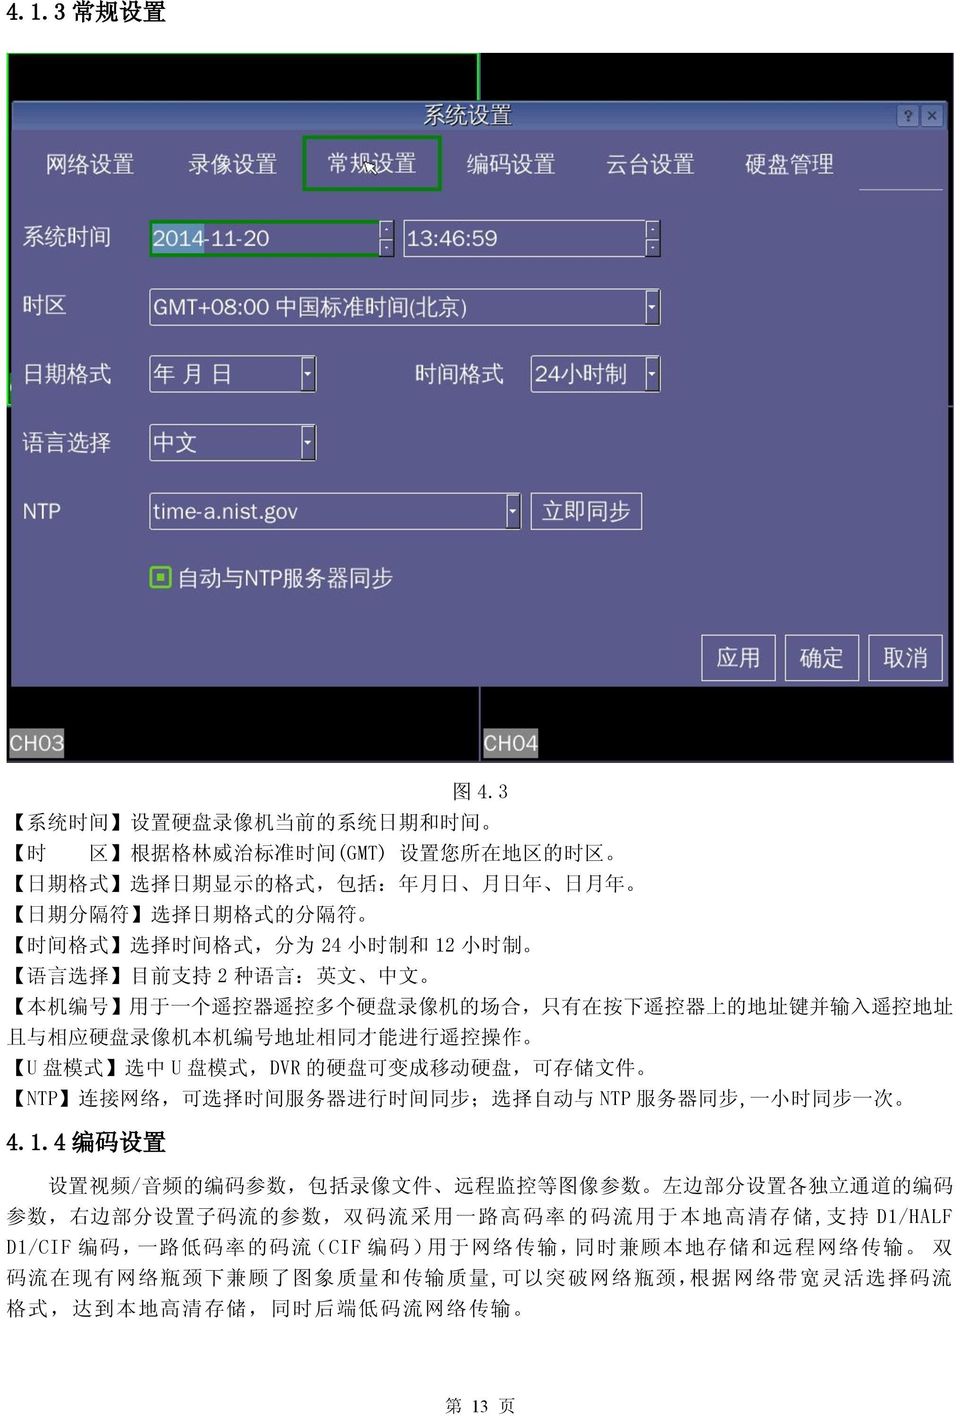 24 小 时 制 和 12 小 时 制 语 言 选 择 目 前 支 持 2 种 语 言 : 英 文 中 文 本 机 编 号 用 于 一 个 遥 控 器 遥 控 多 个 硬 盘 录 像 机 的 场 合, 只 有 在 按 下 遥 控 器 上 的 地 址 键 并 输 入 遥 控 地 址 且 与 相 应 硬 盘 录 像 机 本 机 编 号 地 址 相 同 才 能 进 行 遥 控 操 作 U 盘 模 式